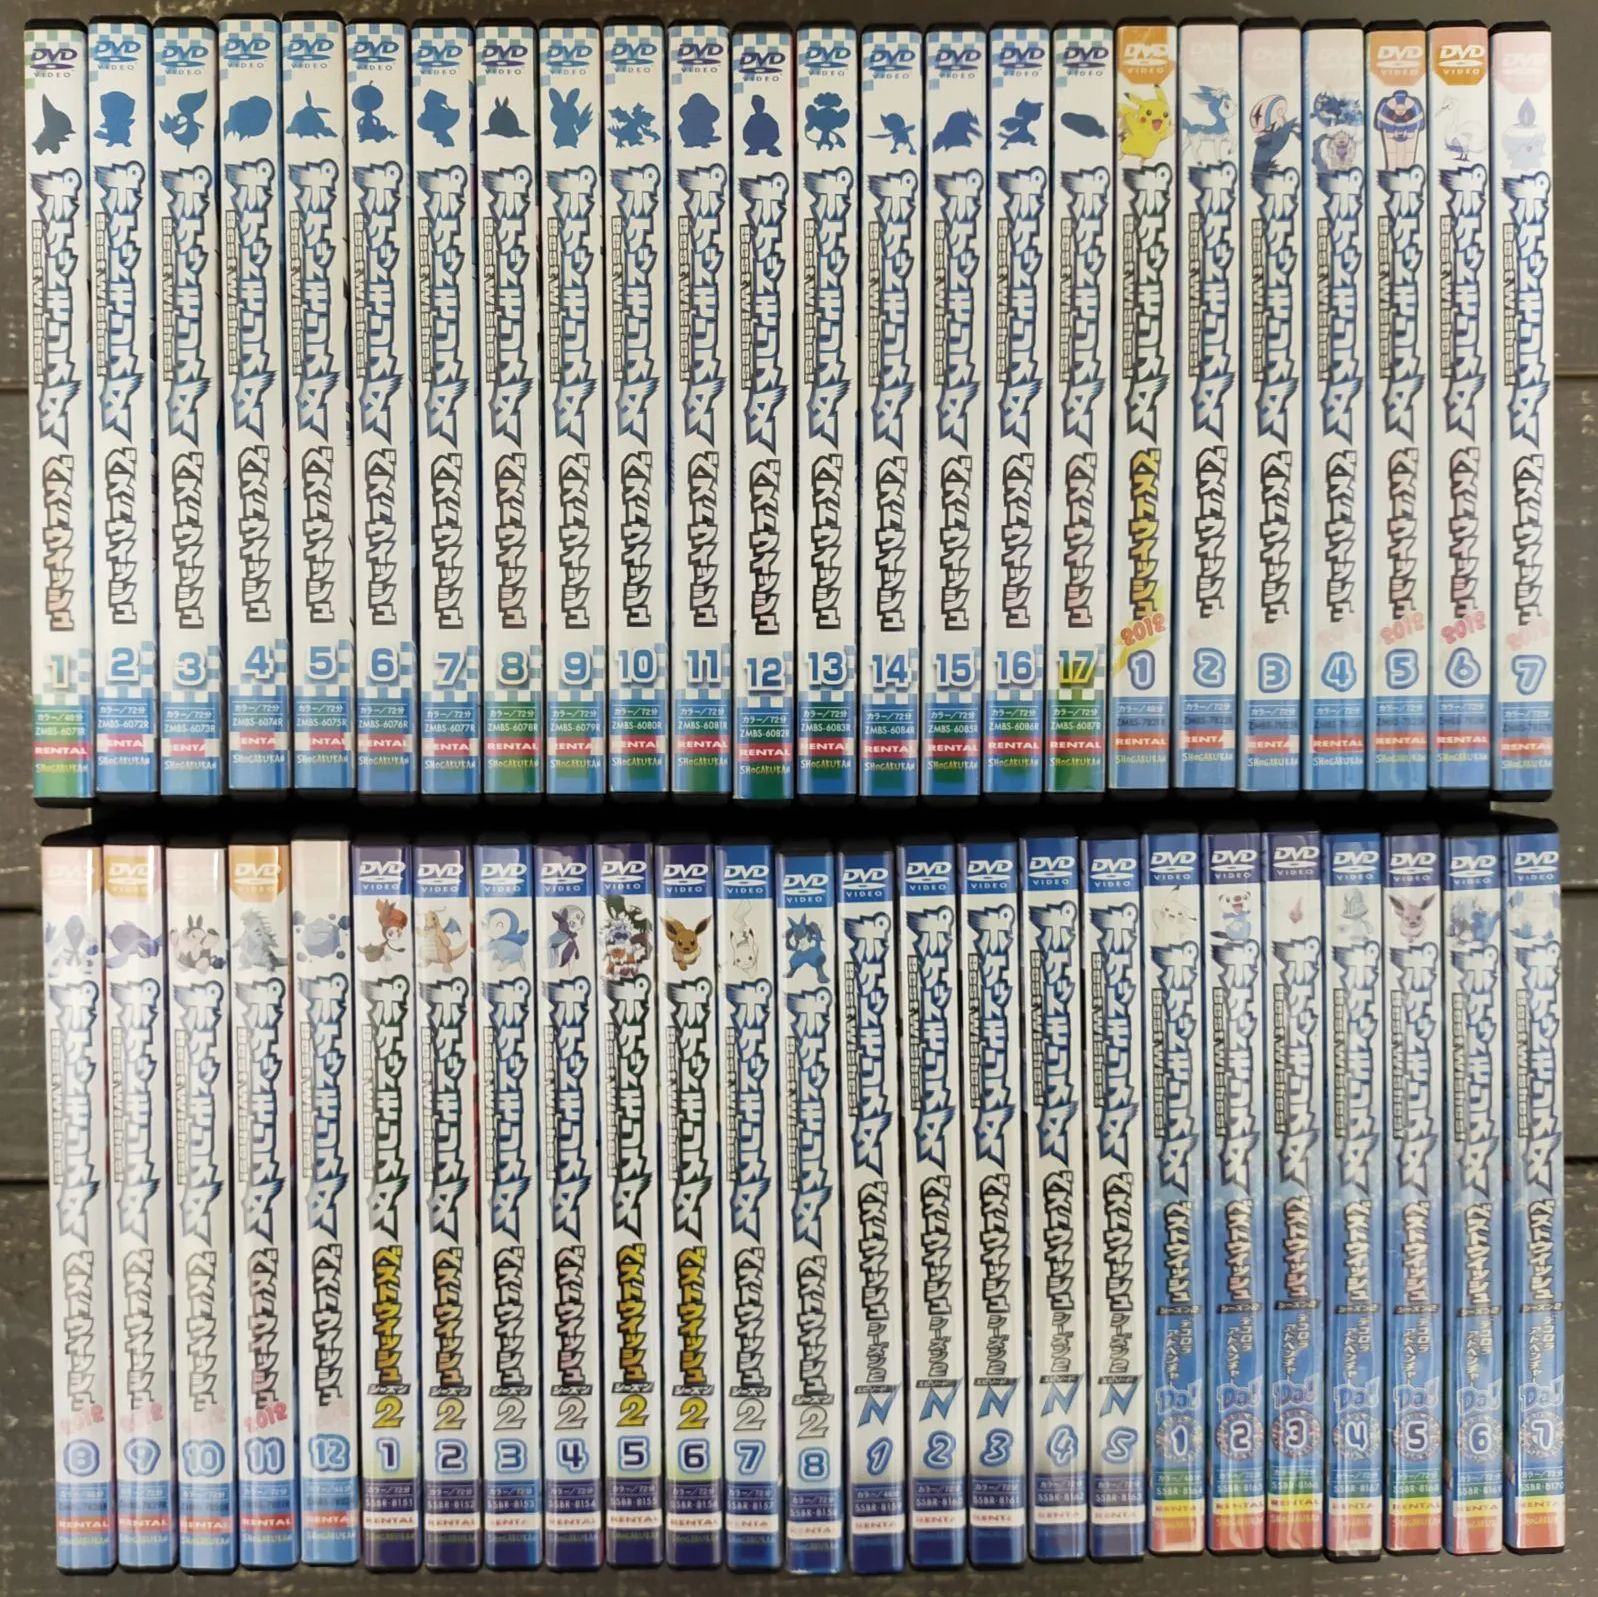 ポケットモンスター ベストウィッシュ DVD 全シーズン 49巻セット - DVD